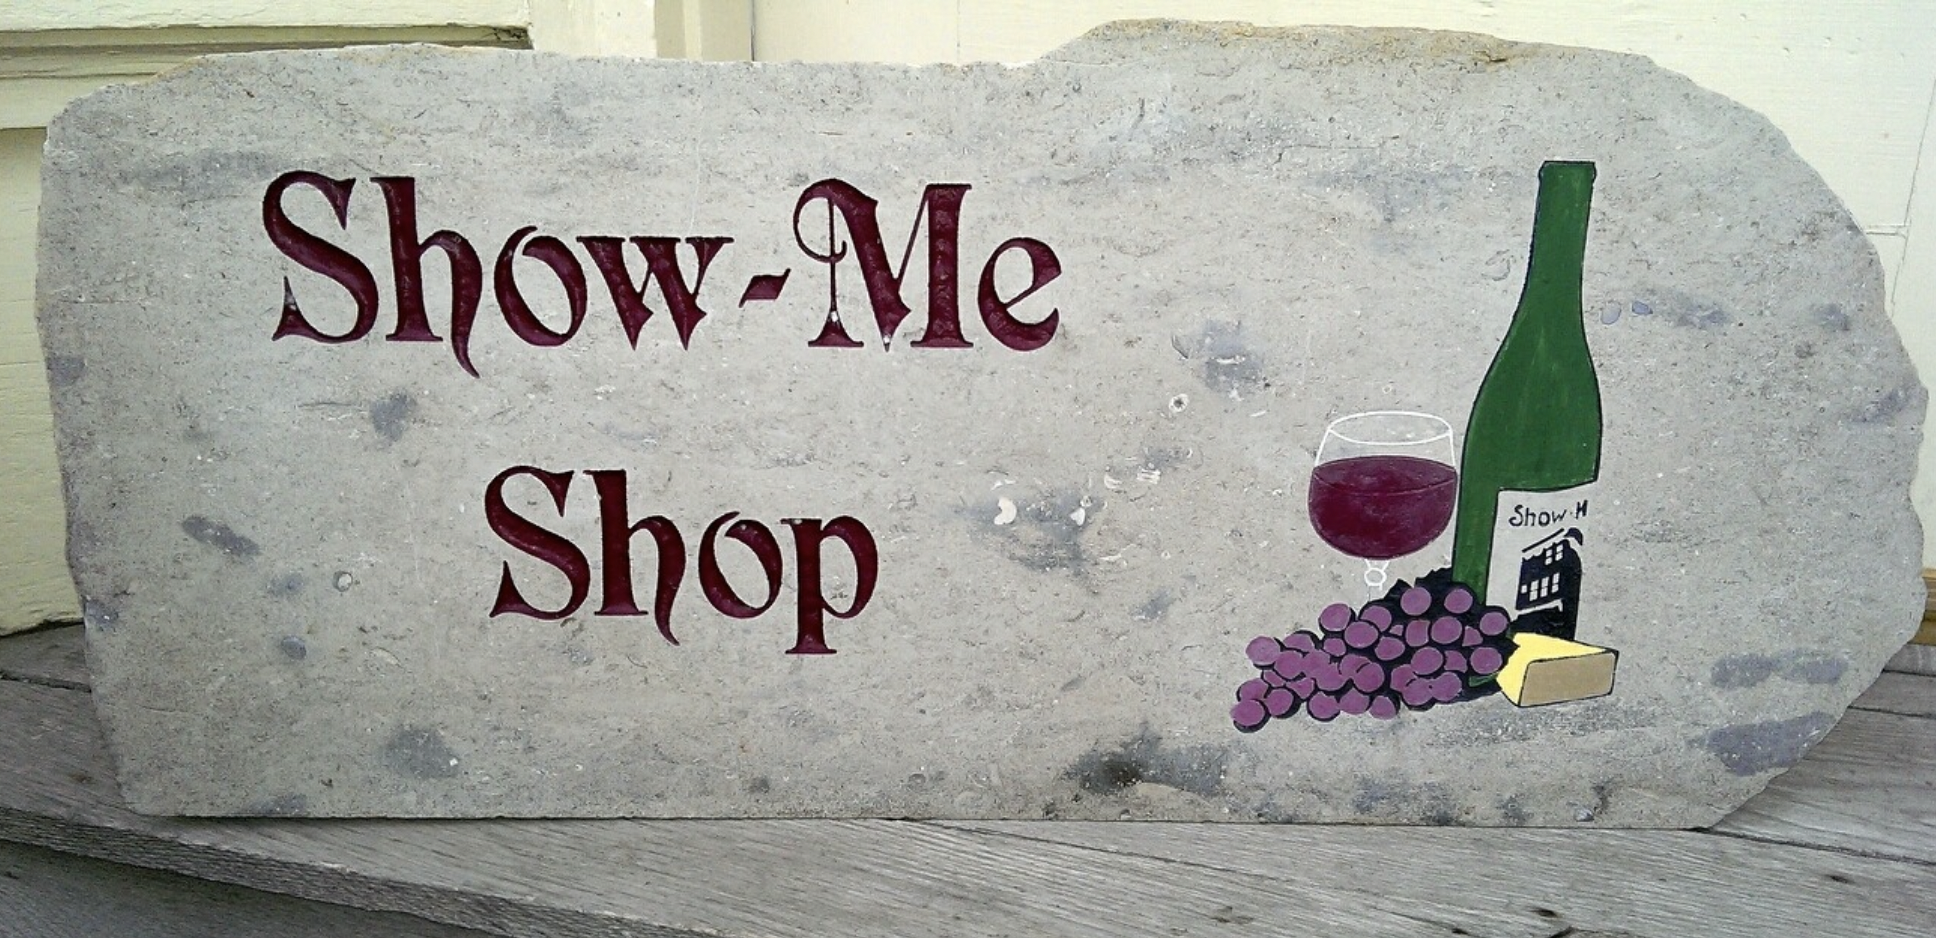 Show-Me Shop